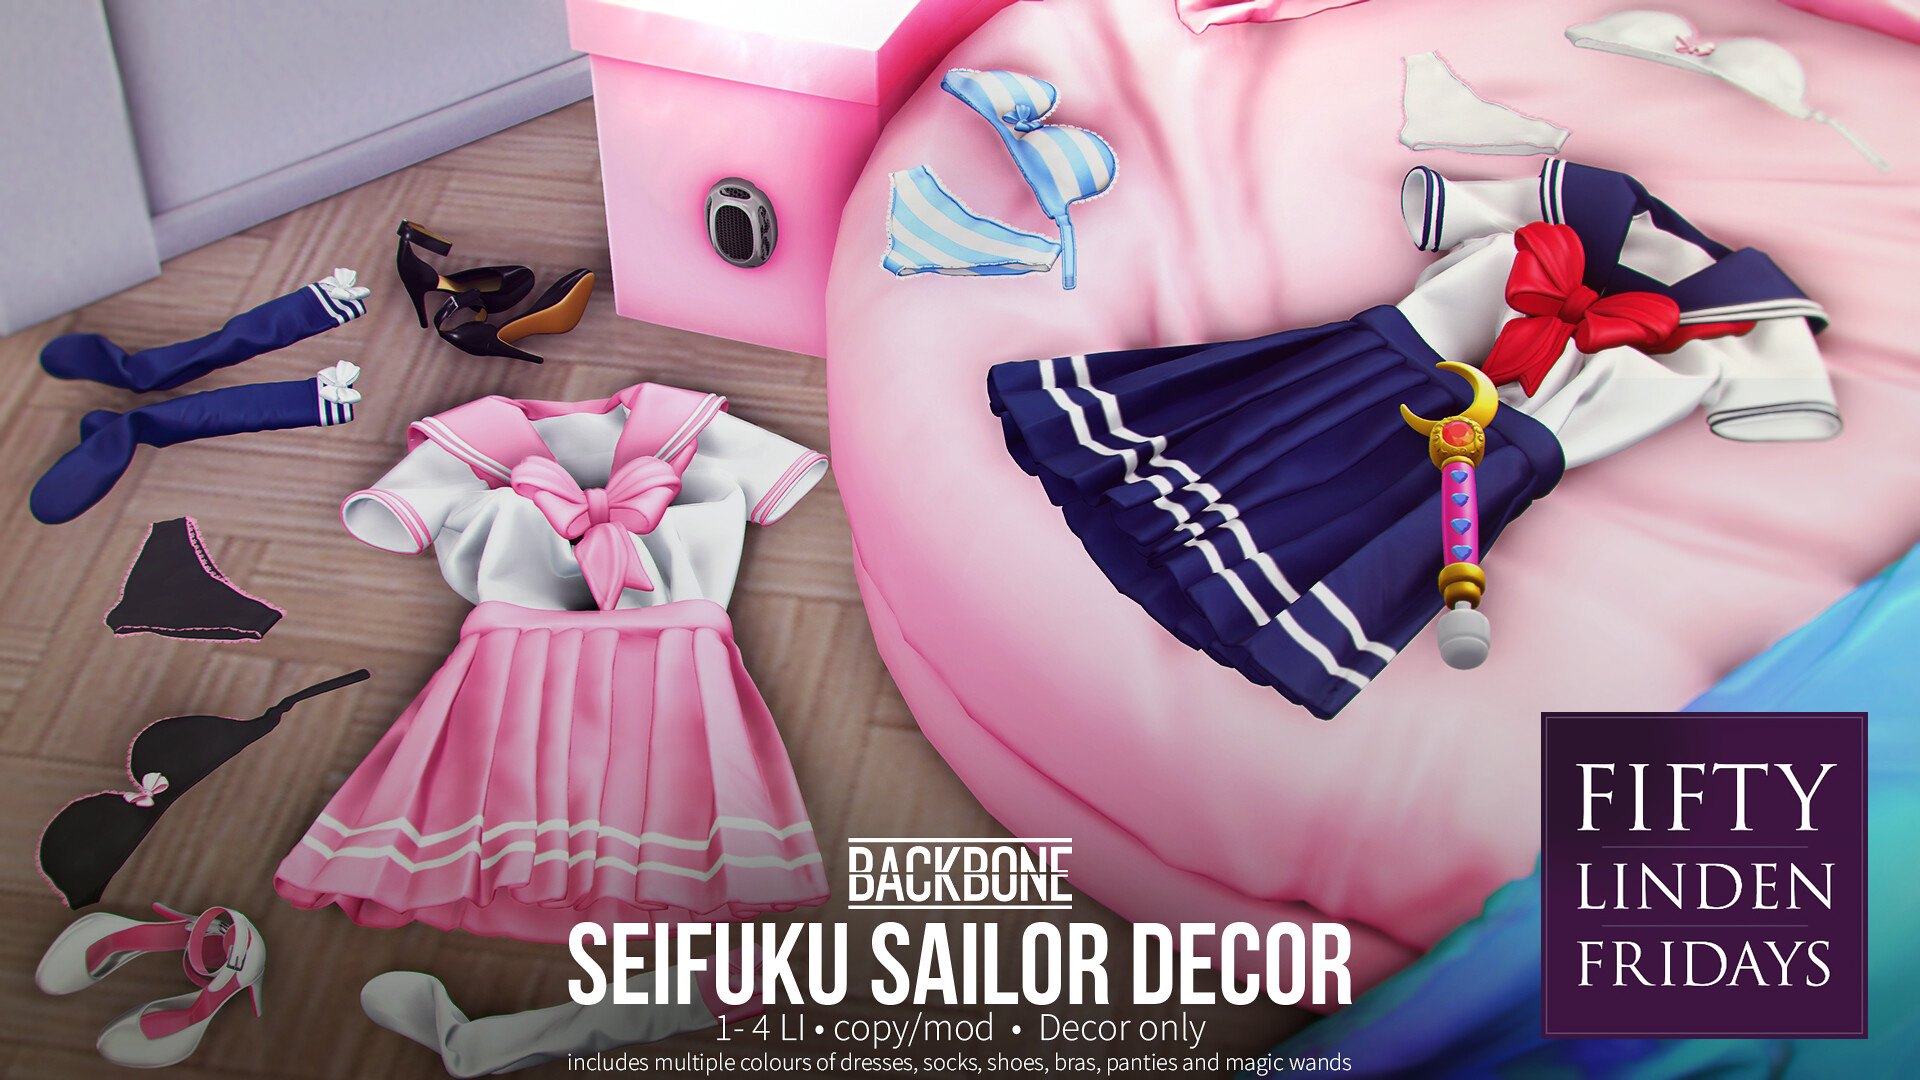 BackBone – Seifuku Sailor Decor